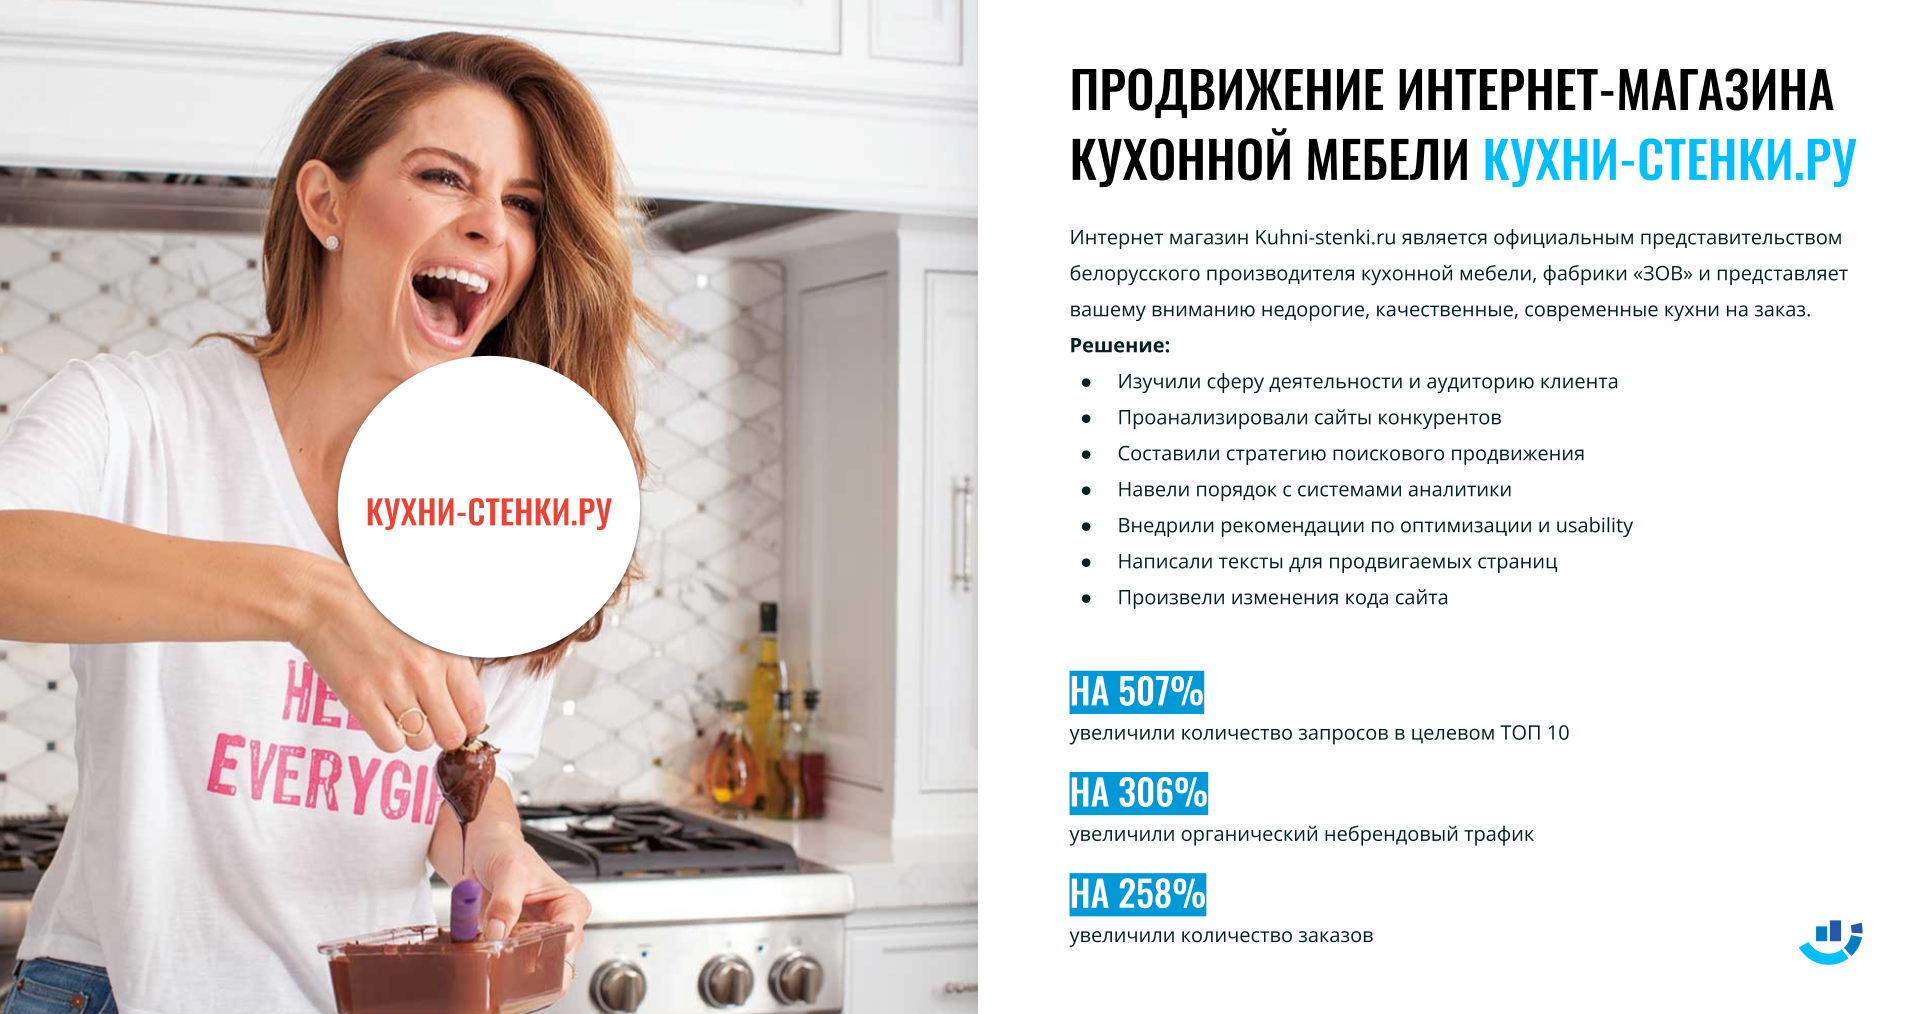 [Кейс] Мебель для кухни. На 258% подняли заказы для белорусской мебели. Комплексное продвижение интернет-магазина кухонь | белорусская_мебель, кейс, комплексное_продвижение, кухни-стенки, магазин_мебели